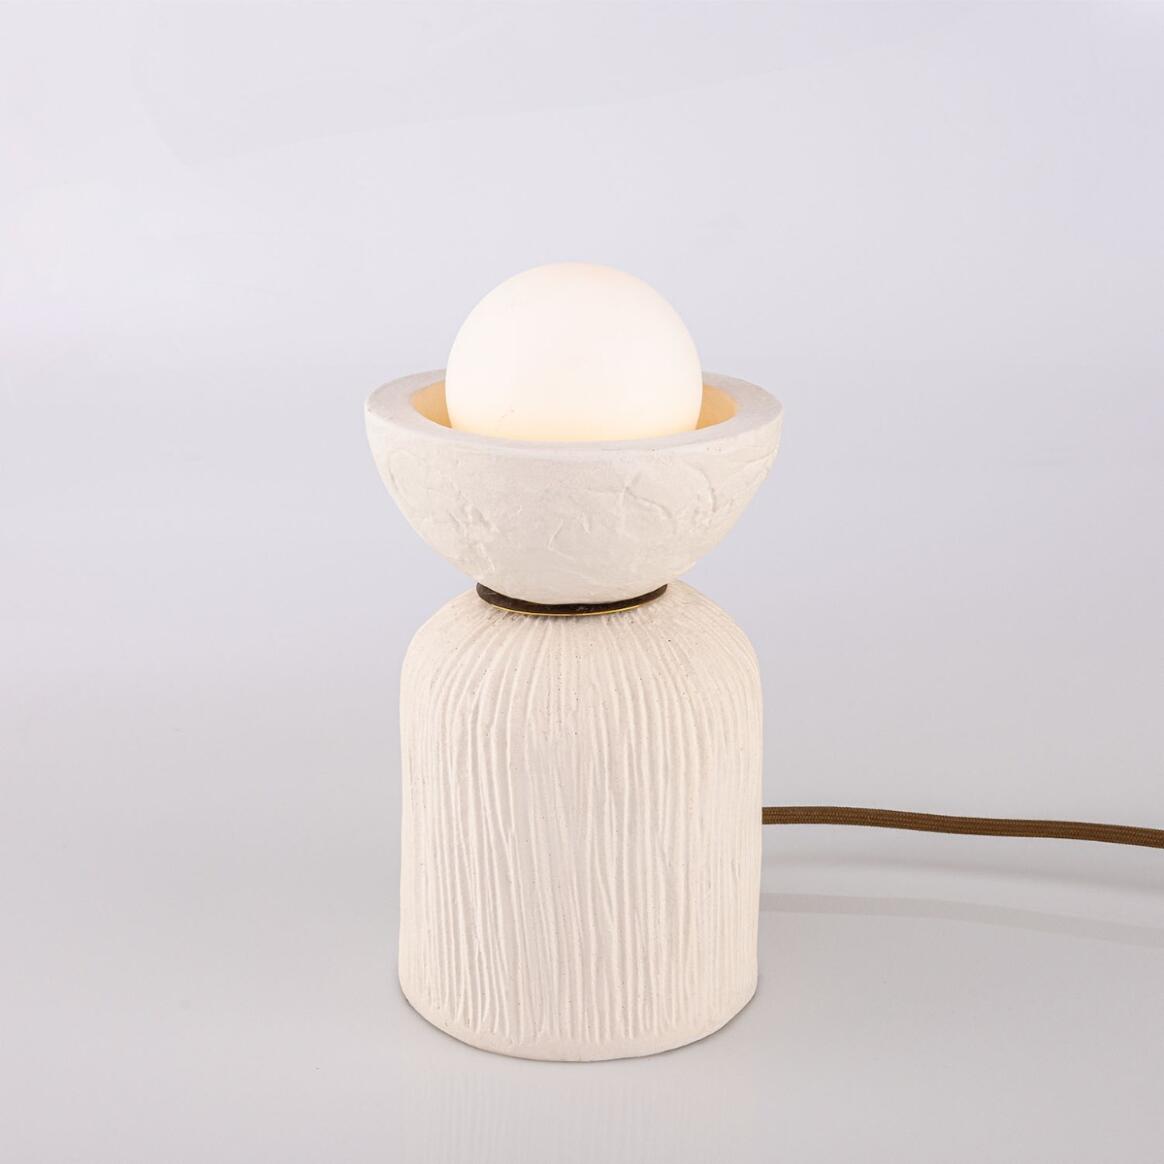 Lampe de table Prali en céramique avec globe en verre, blanc mat rayé main product image